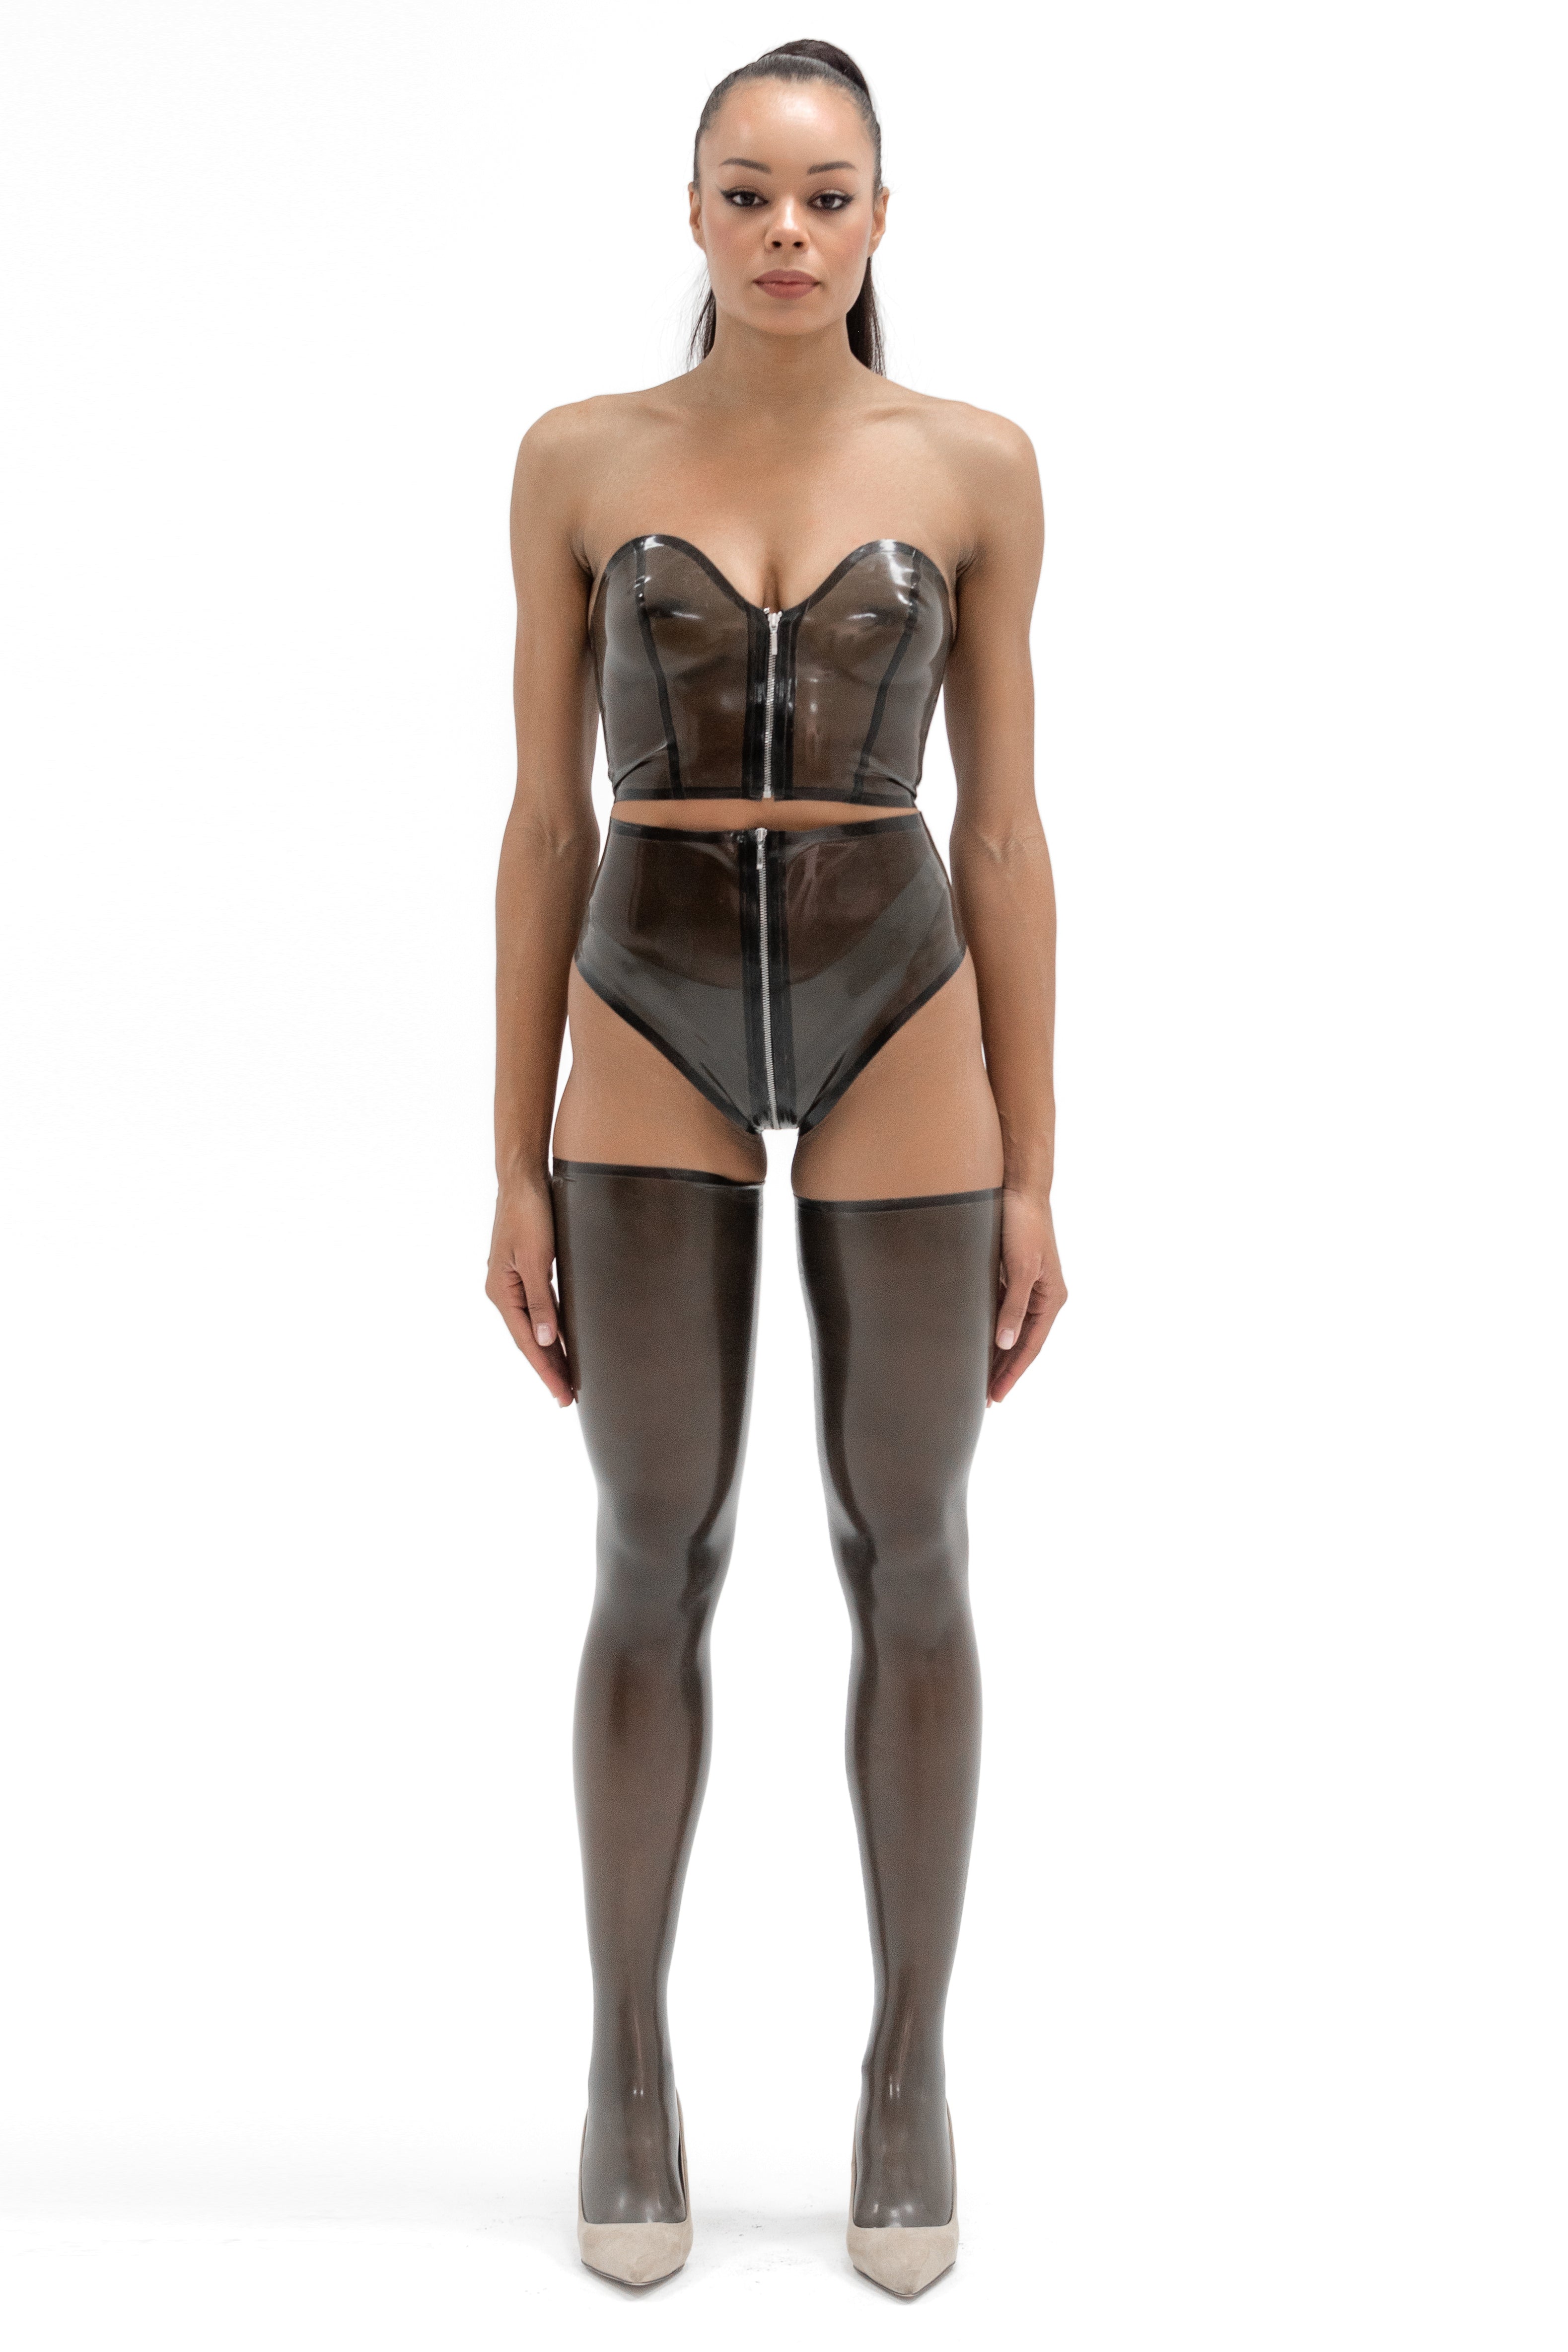 Semi-transparent Black Latex Top and High-Waist Panties set